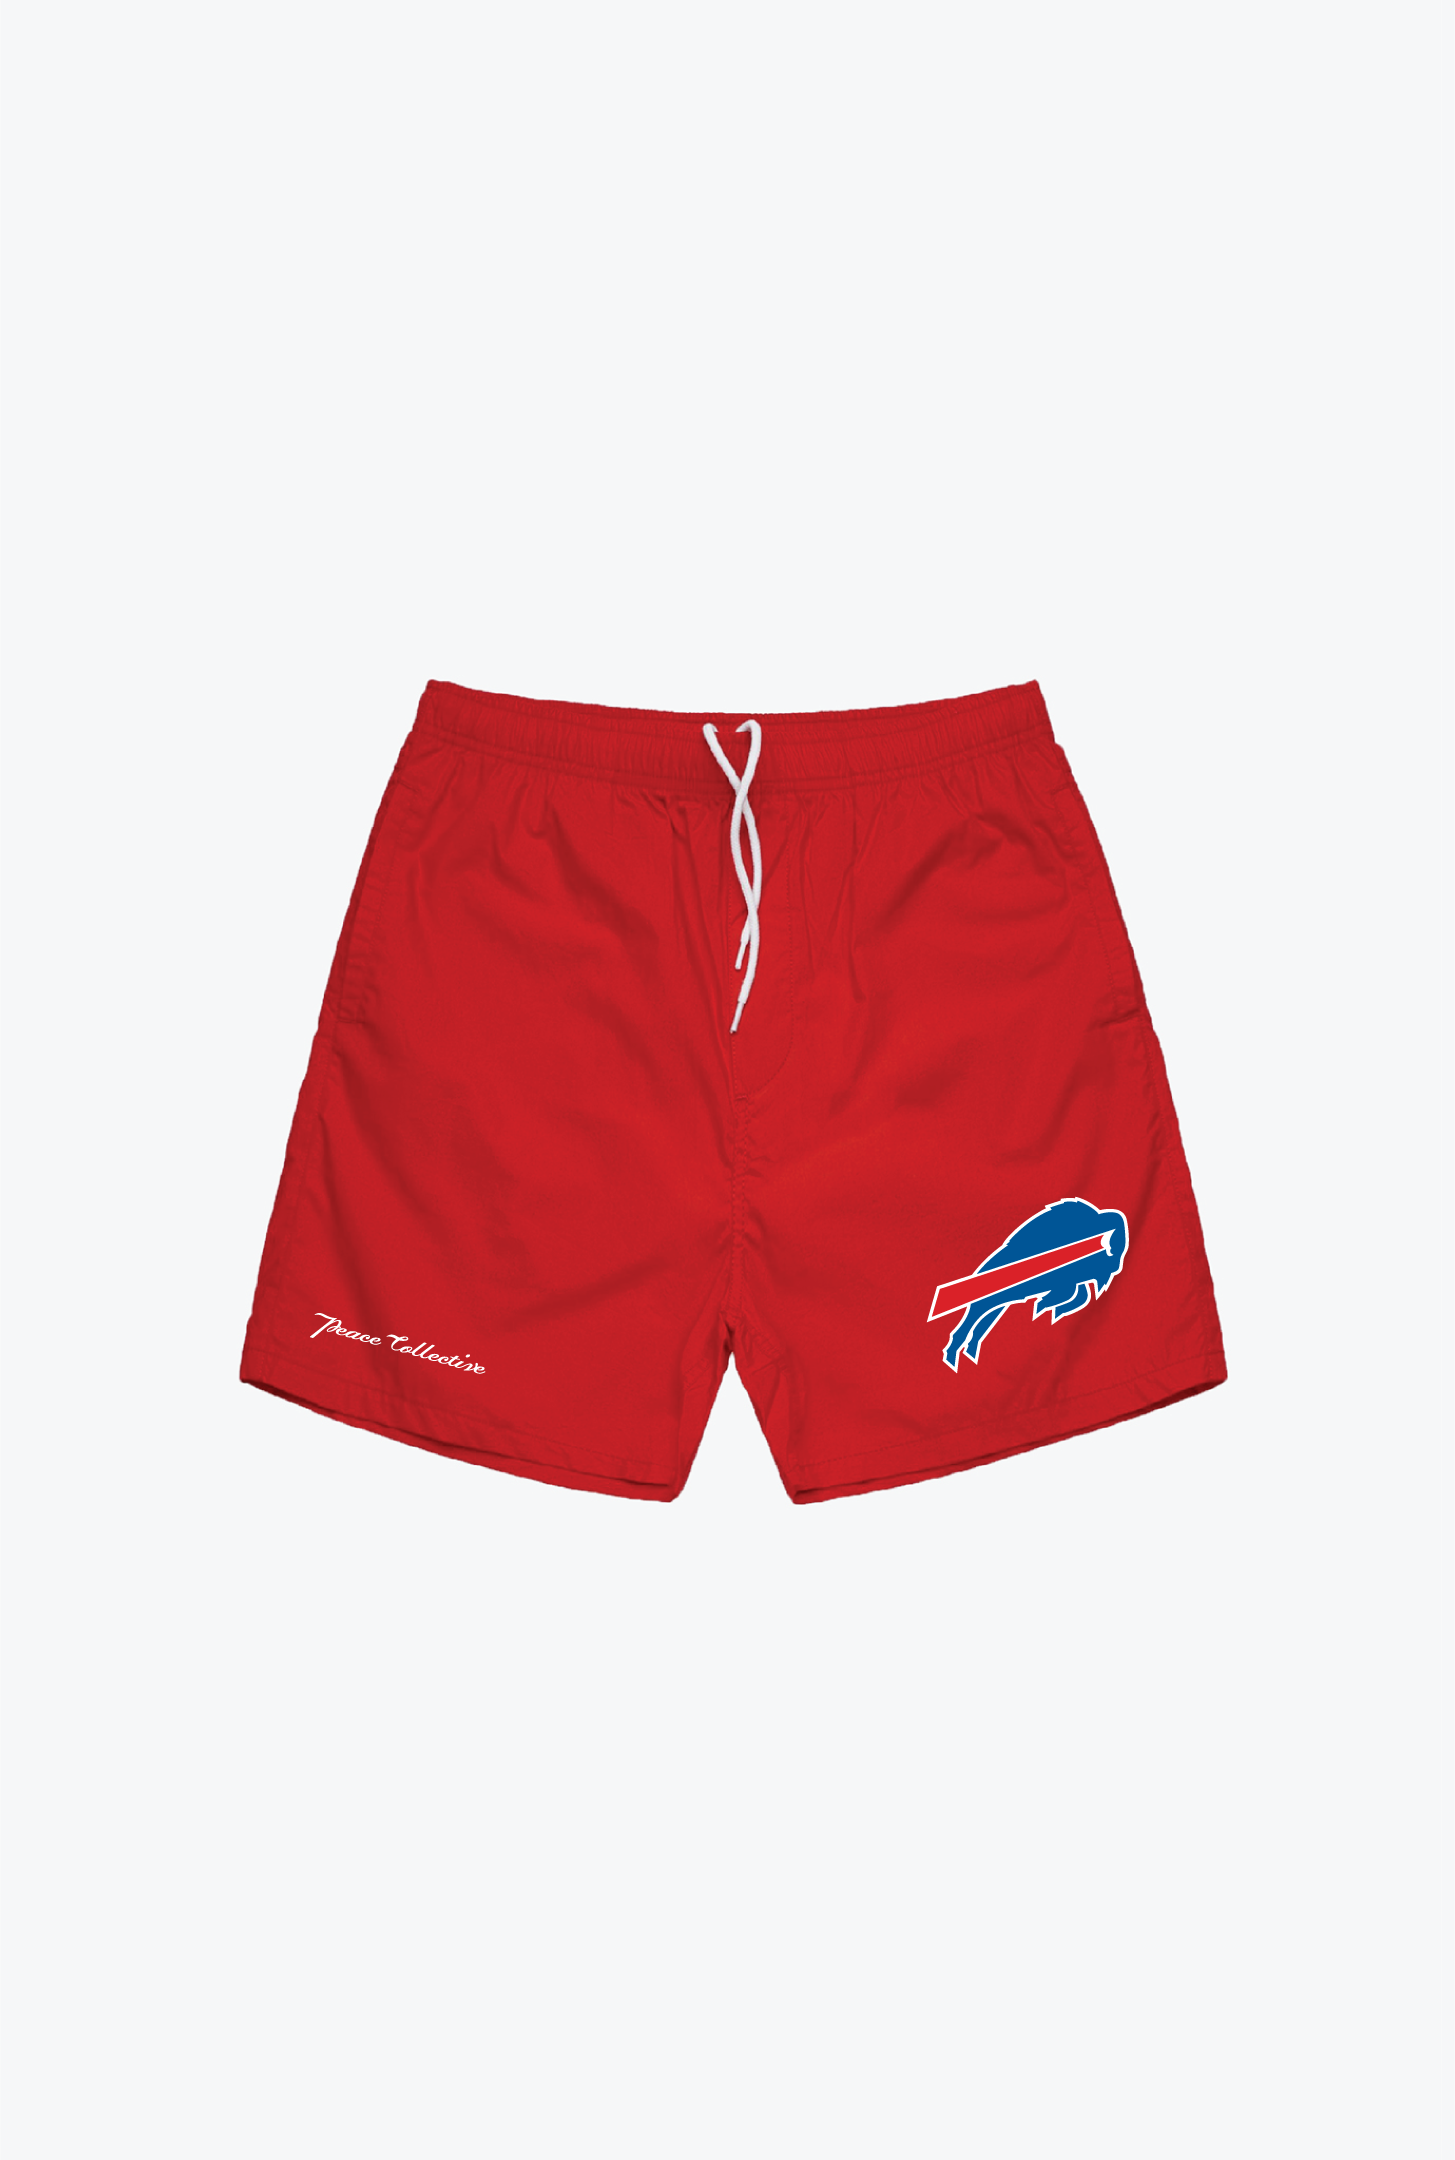 Buffalo Bills Board Shorts - Red